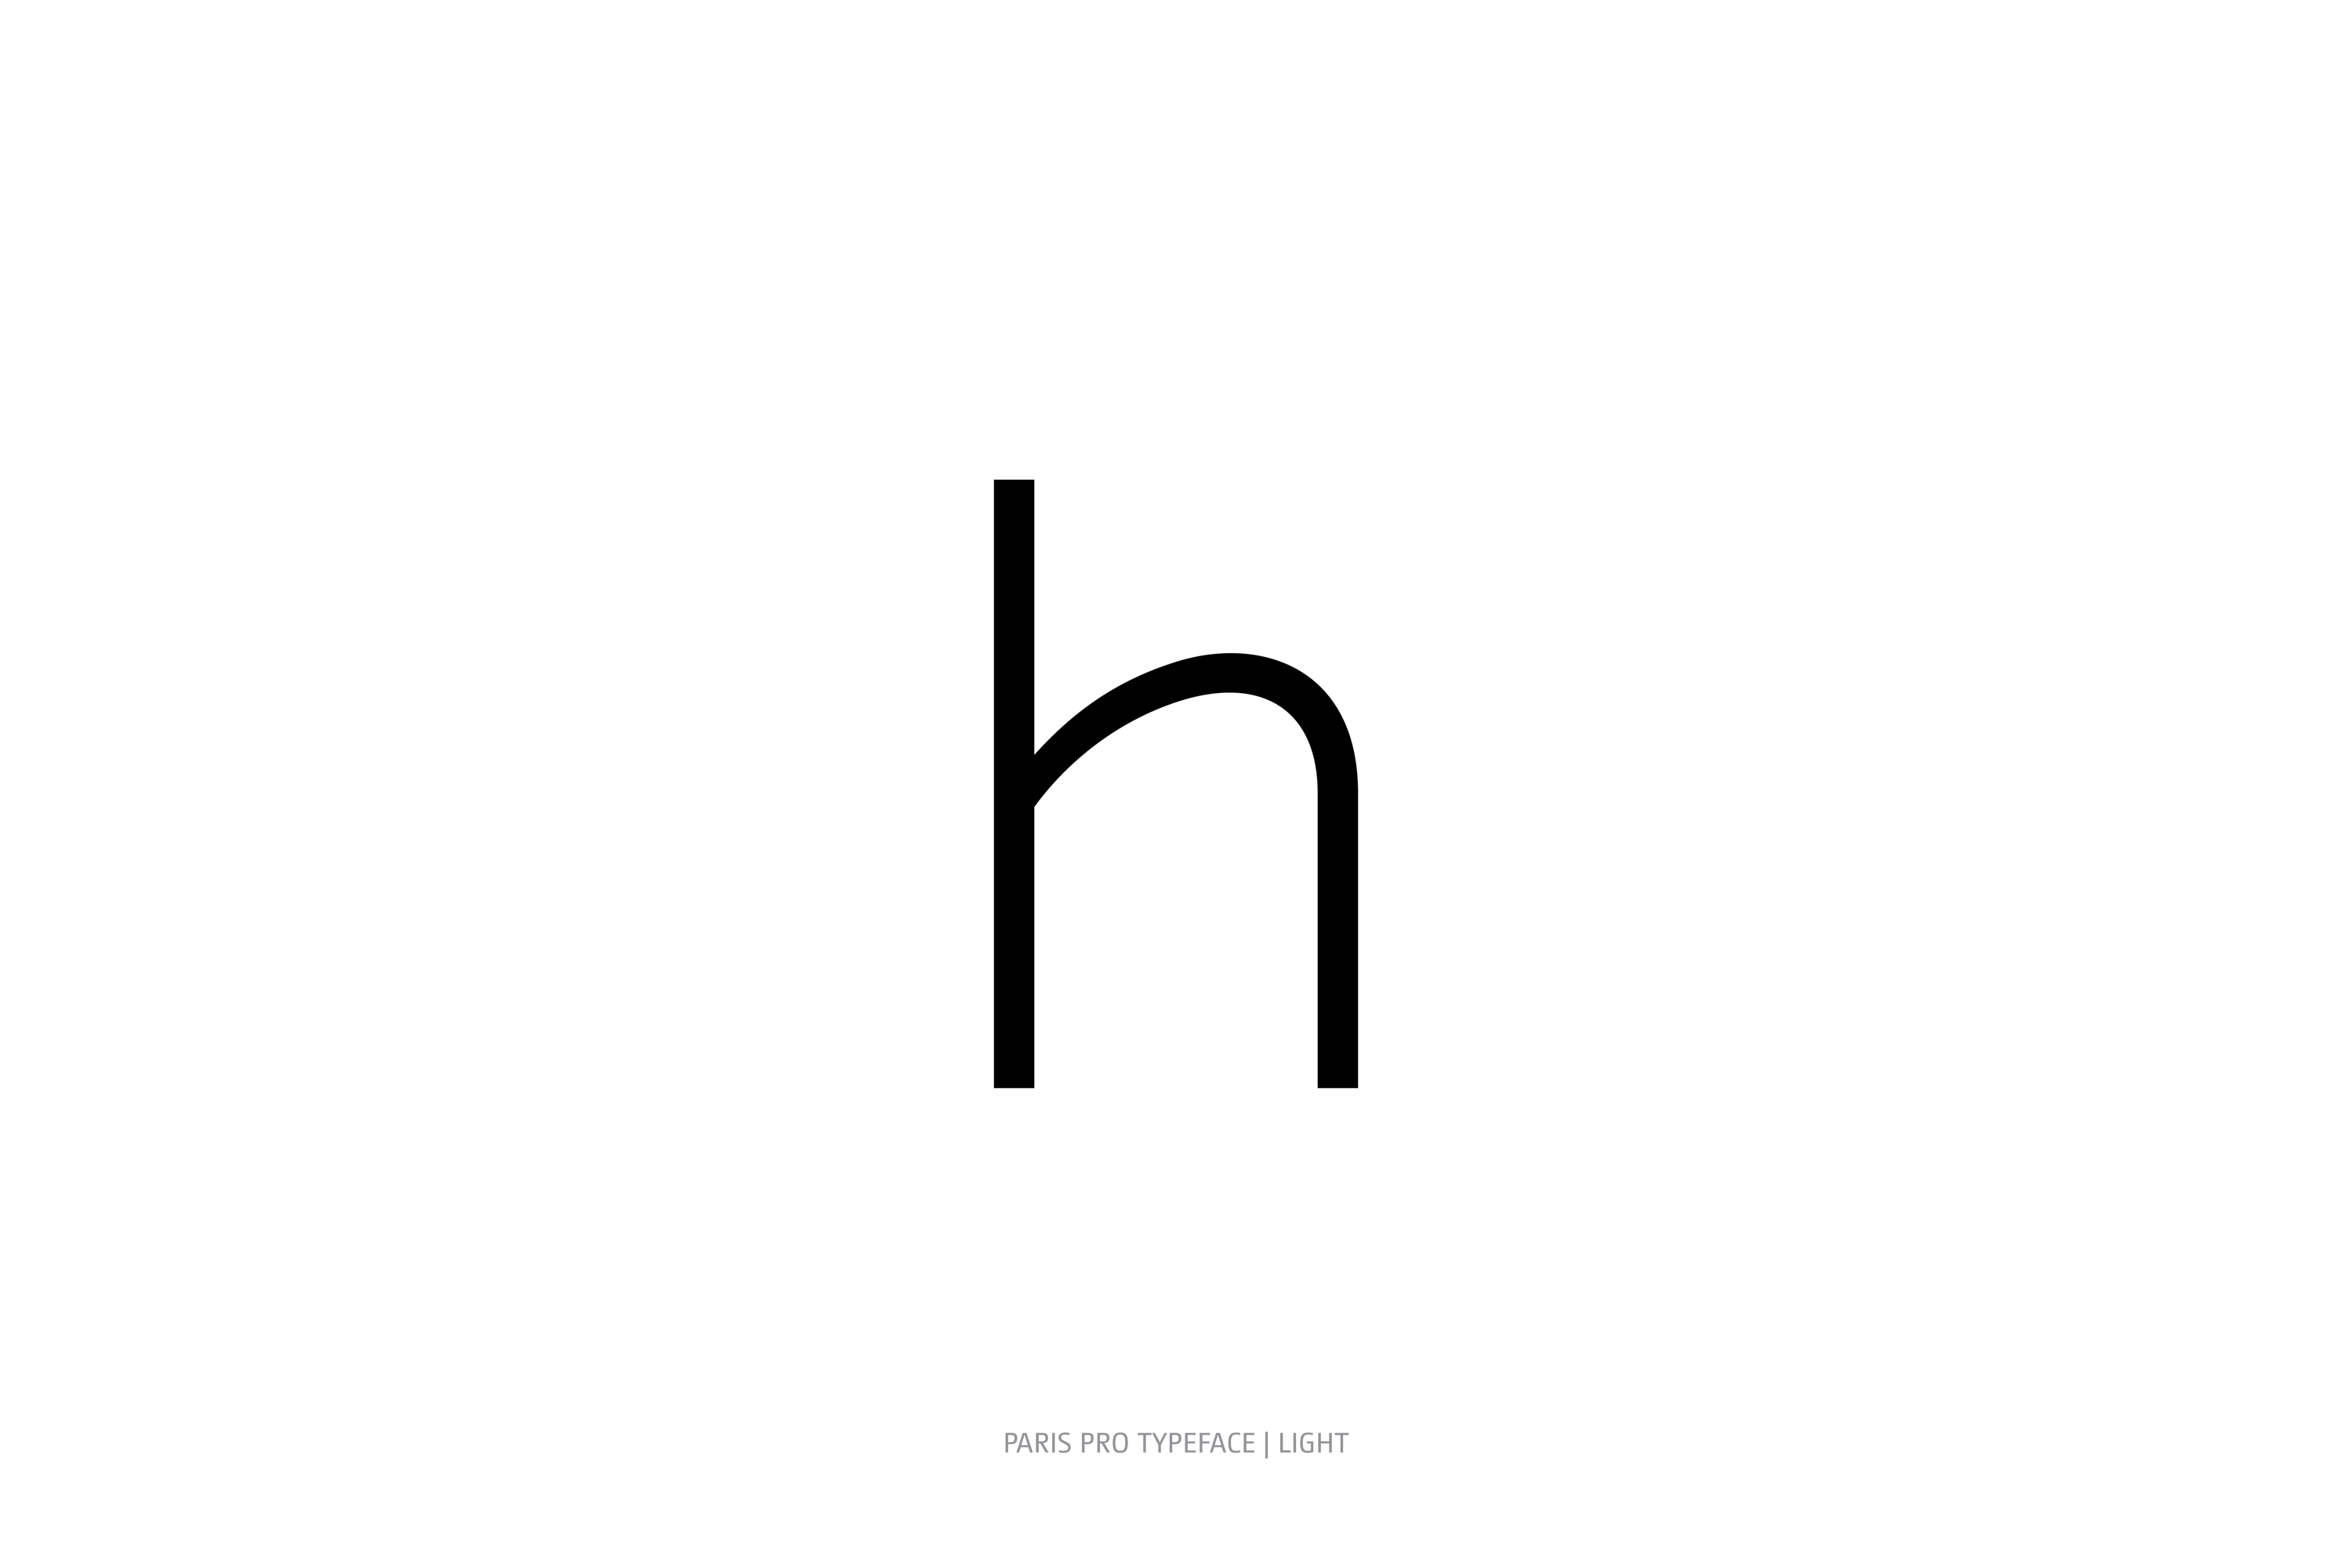 Paris Pro Typeface Light Style h